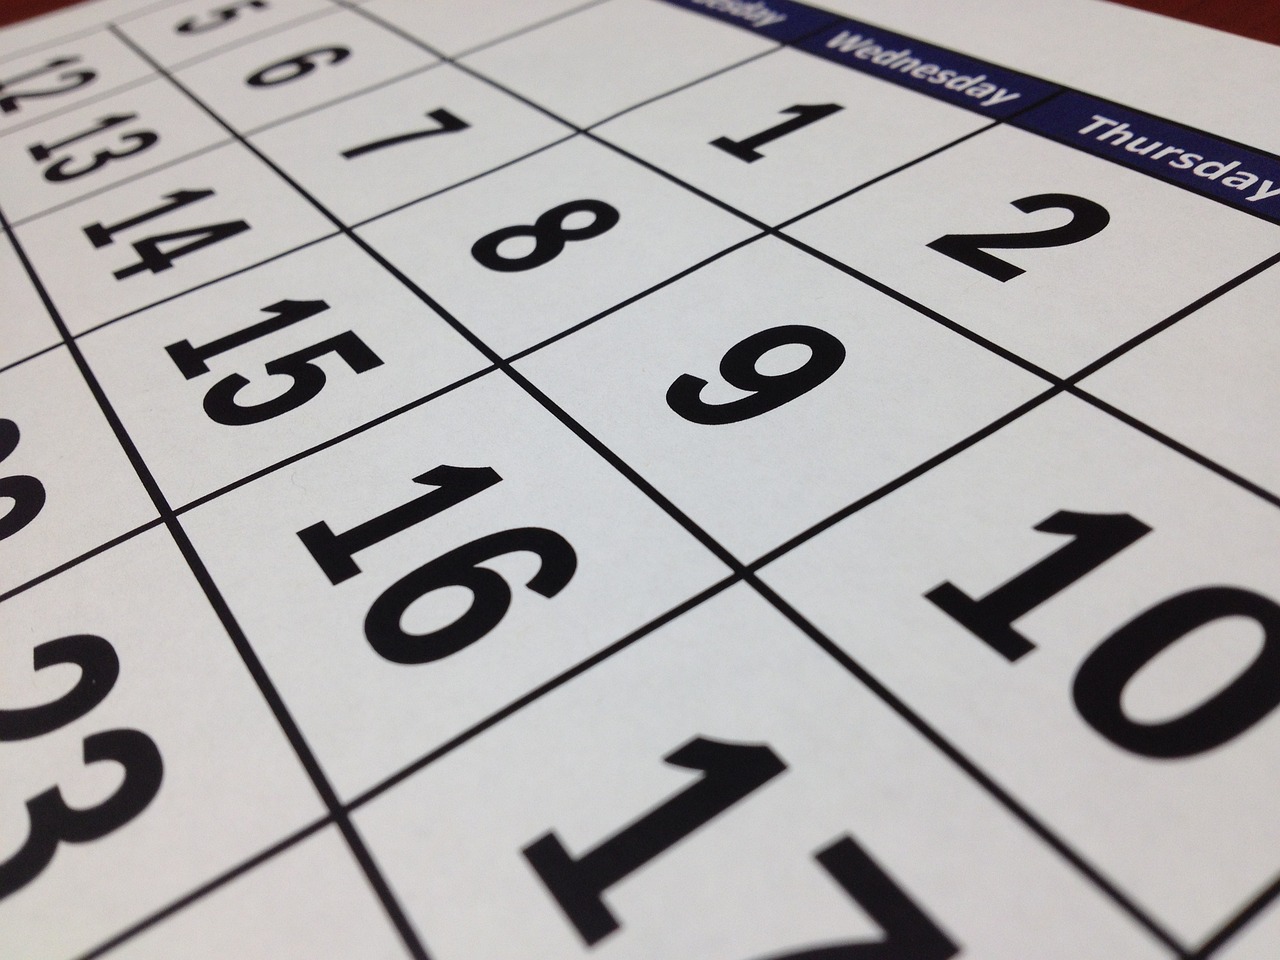 Calendrier septembre : Événements, fêtes et dates importantes du mois de septembre